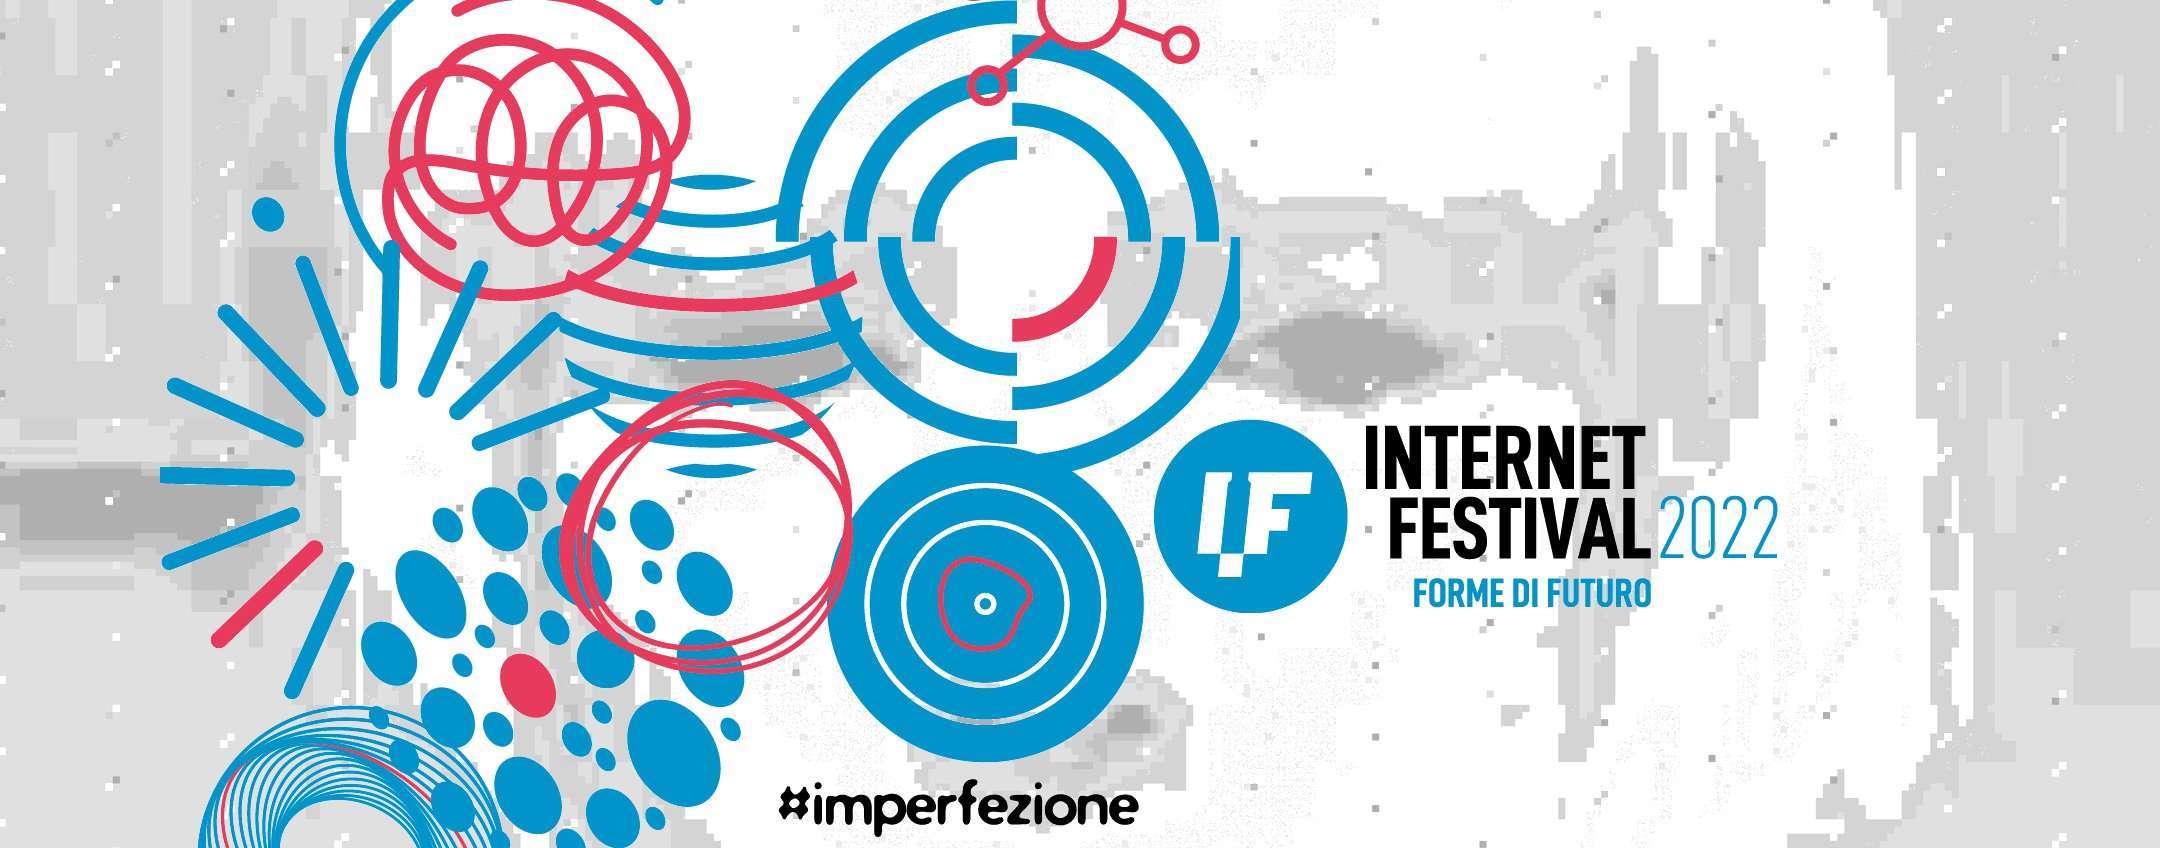 Internet Festival 2022: lasciati trasportare dalle imperfezioni